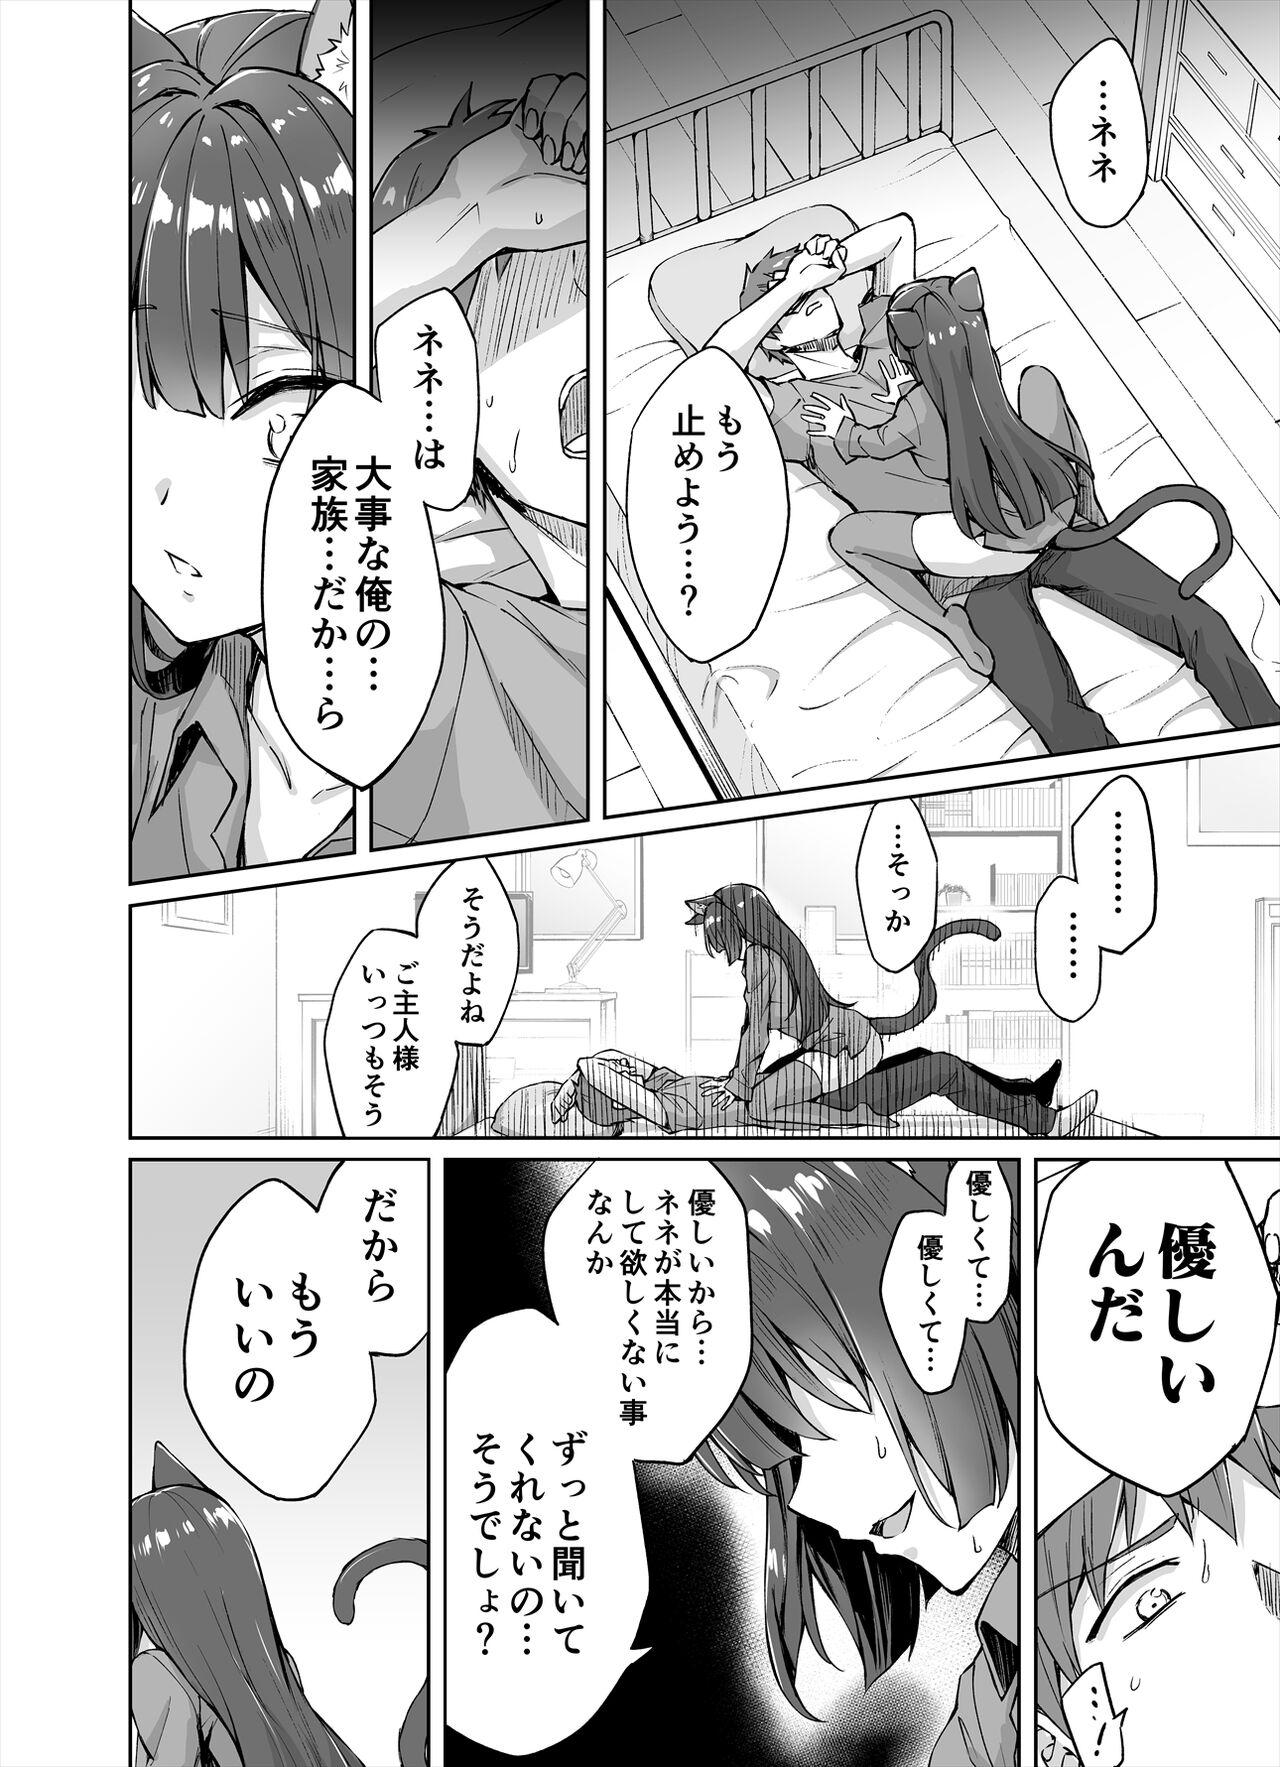 Putinha [Kotatsu] Yandere-kai Neko-chan Seijin Manga #01 Concha - Page 5